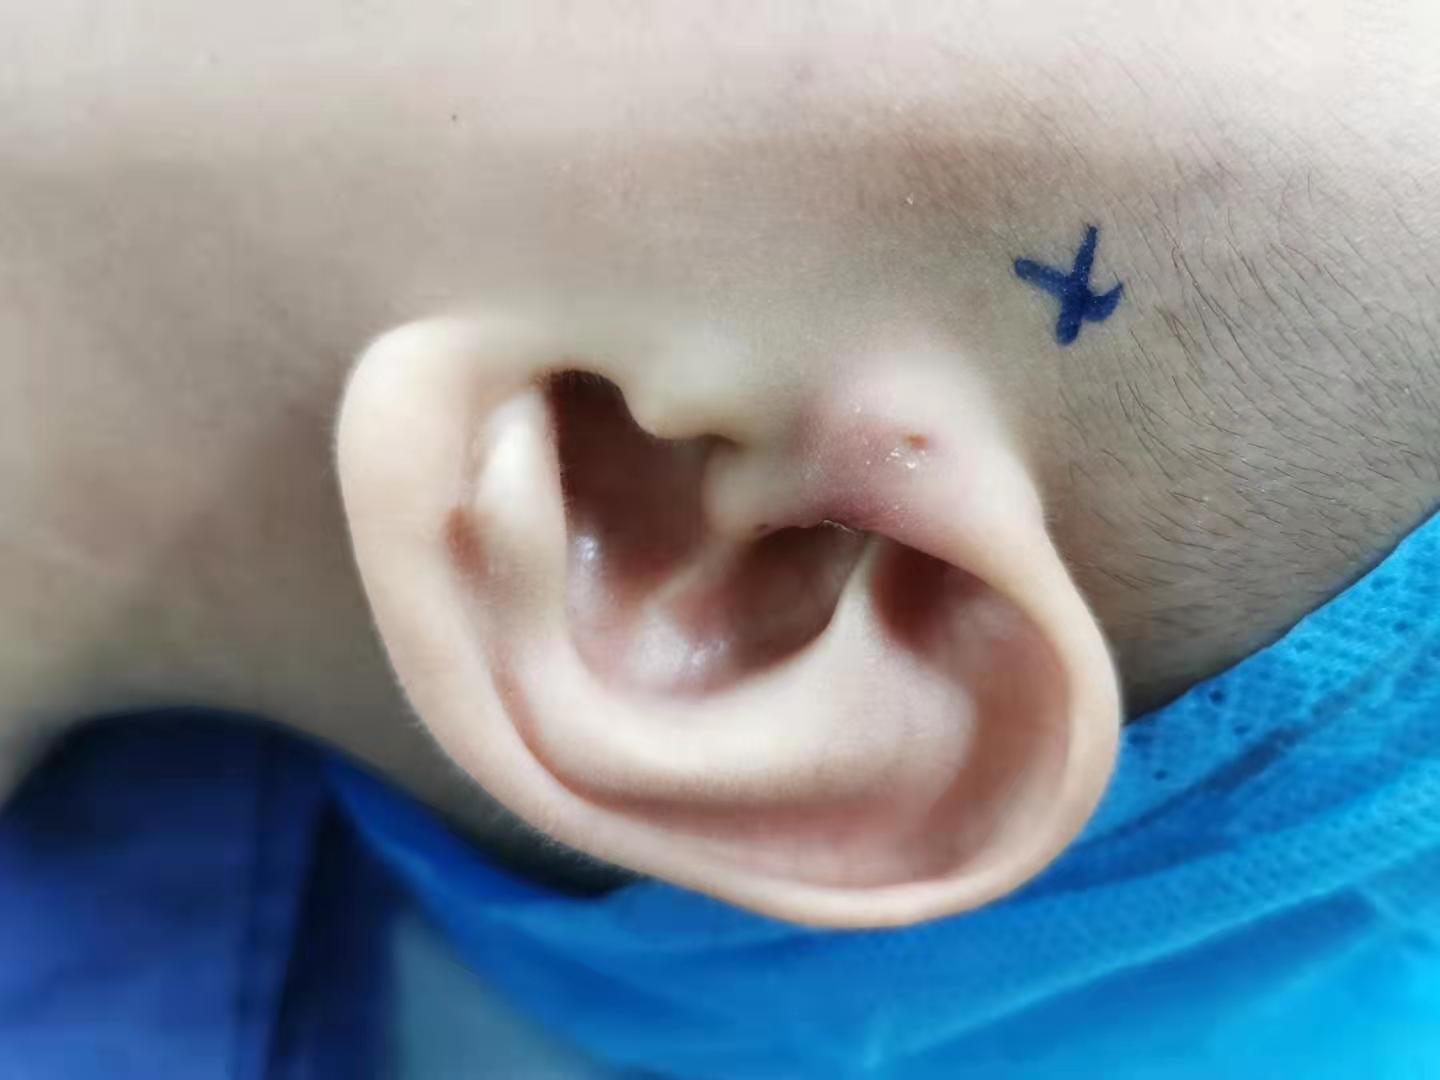 耳前瘘管发炎+引流+切除全过程亲身记录 - 知乎